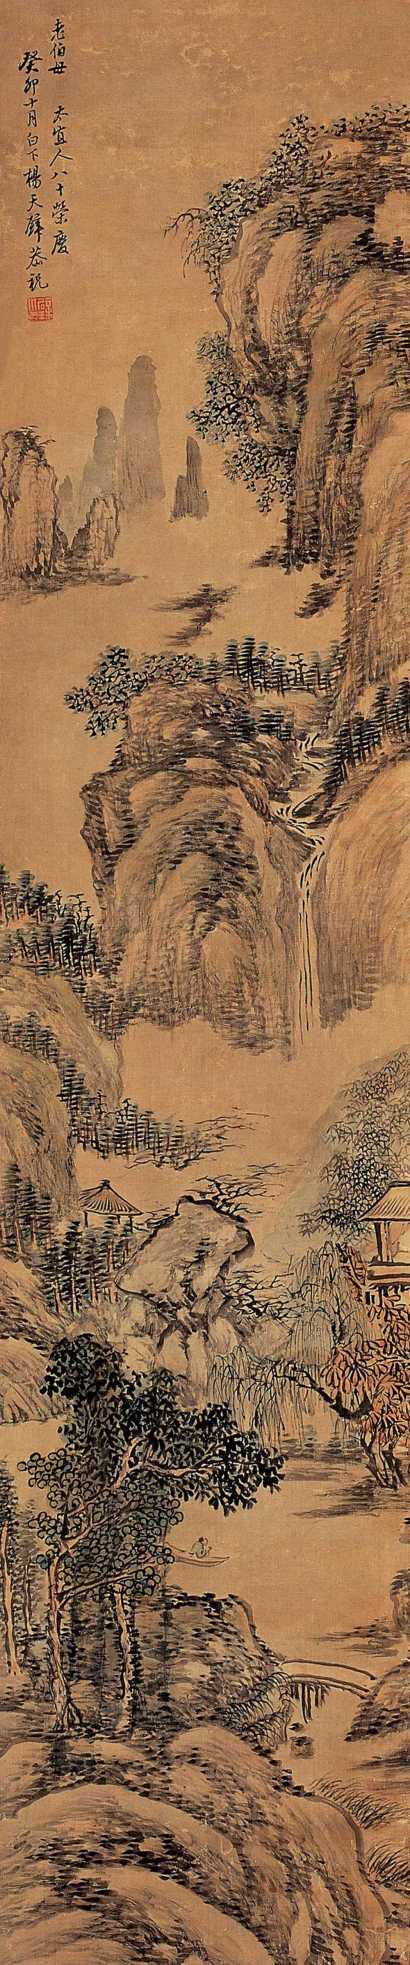 杨天壁 癸卯（1843年）作 山水 立轴